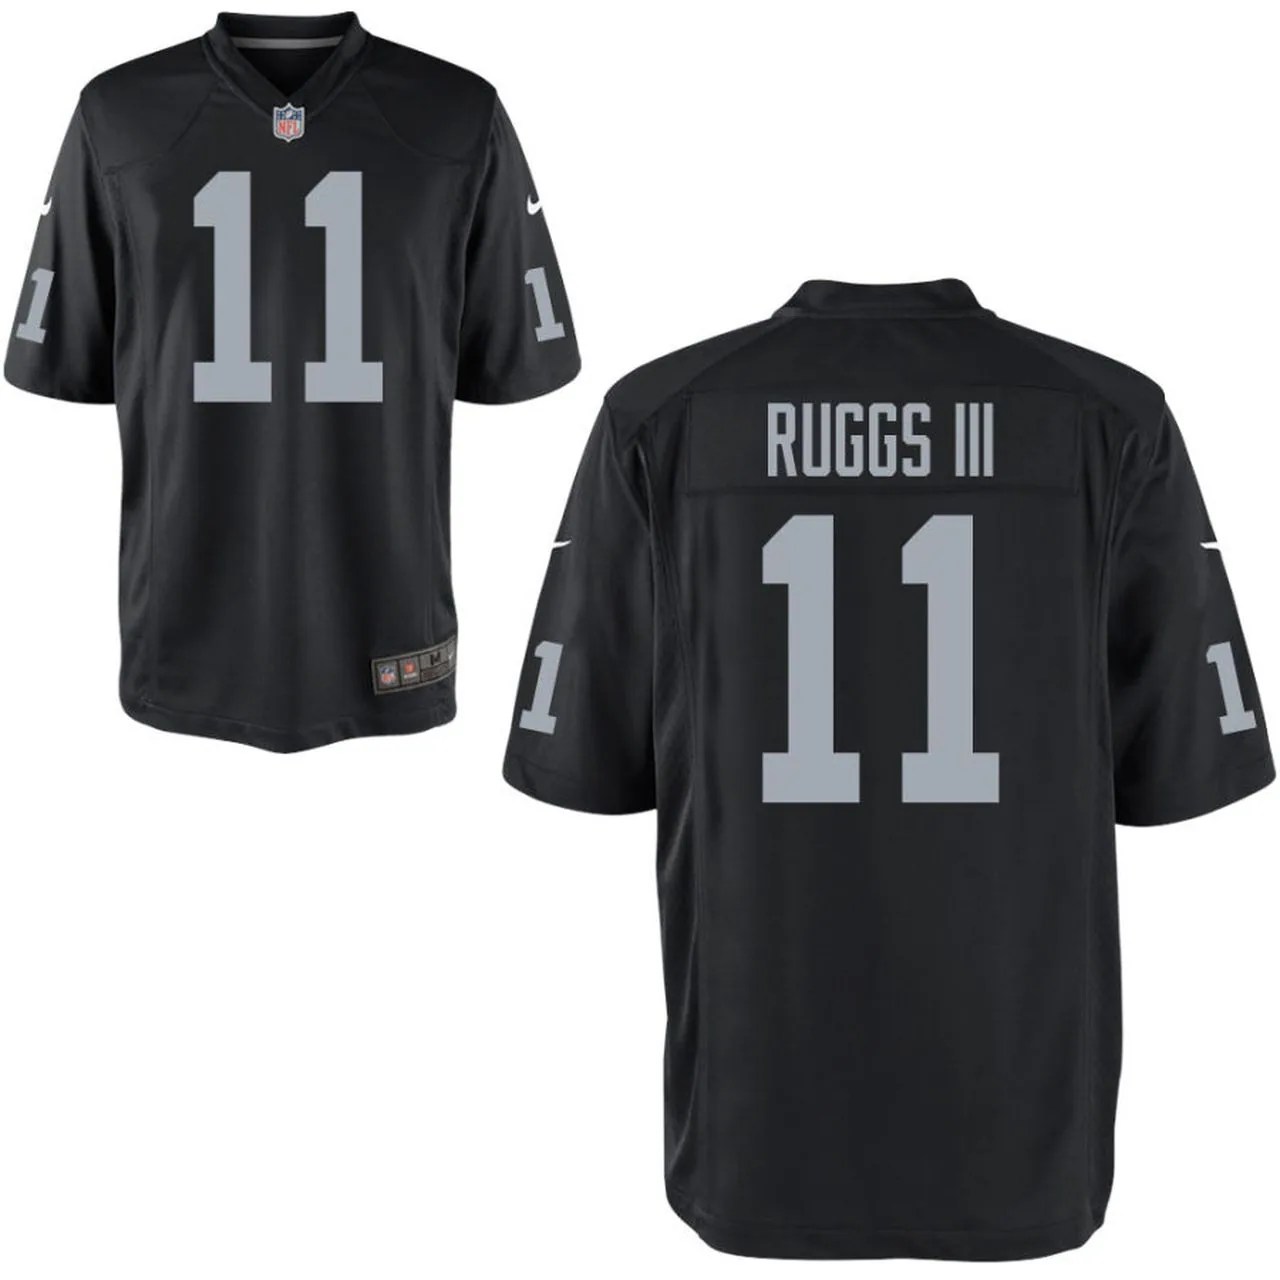 Henry Ruggs III Las Vegas Raiders NFL draft jersey How to buy one